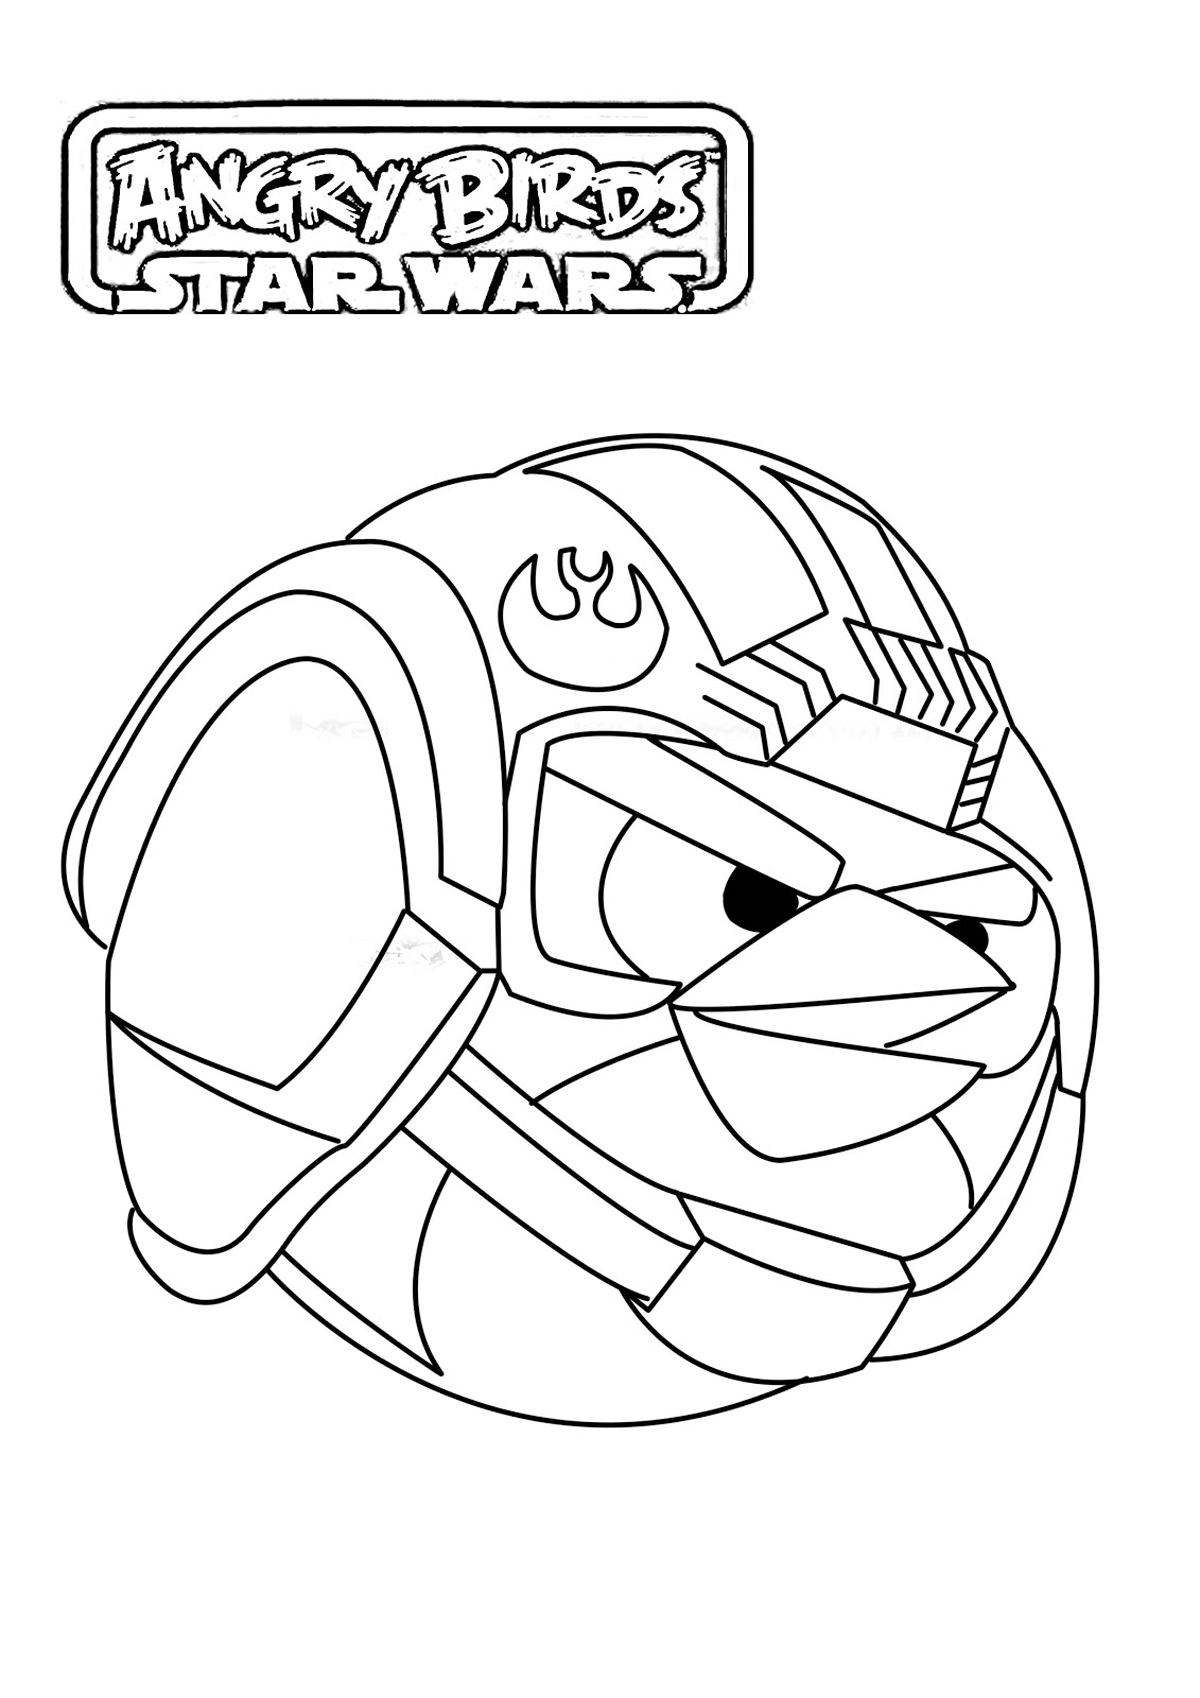 Imagem de um piloto de navio da Star Wars para imprimir e colorir